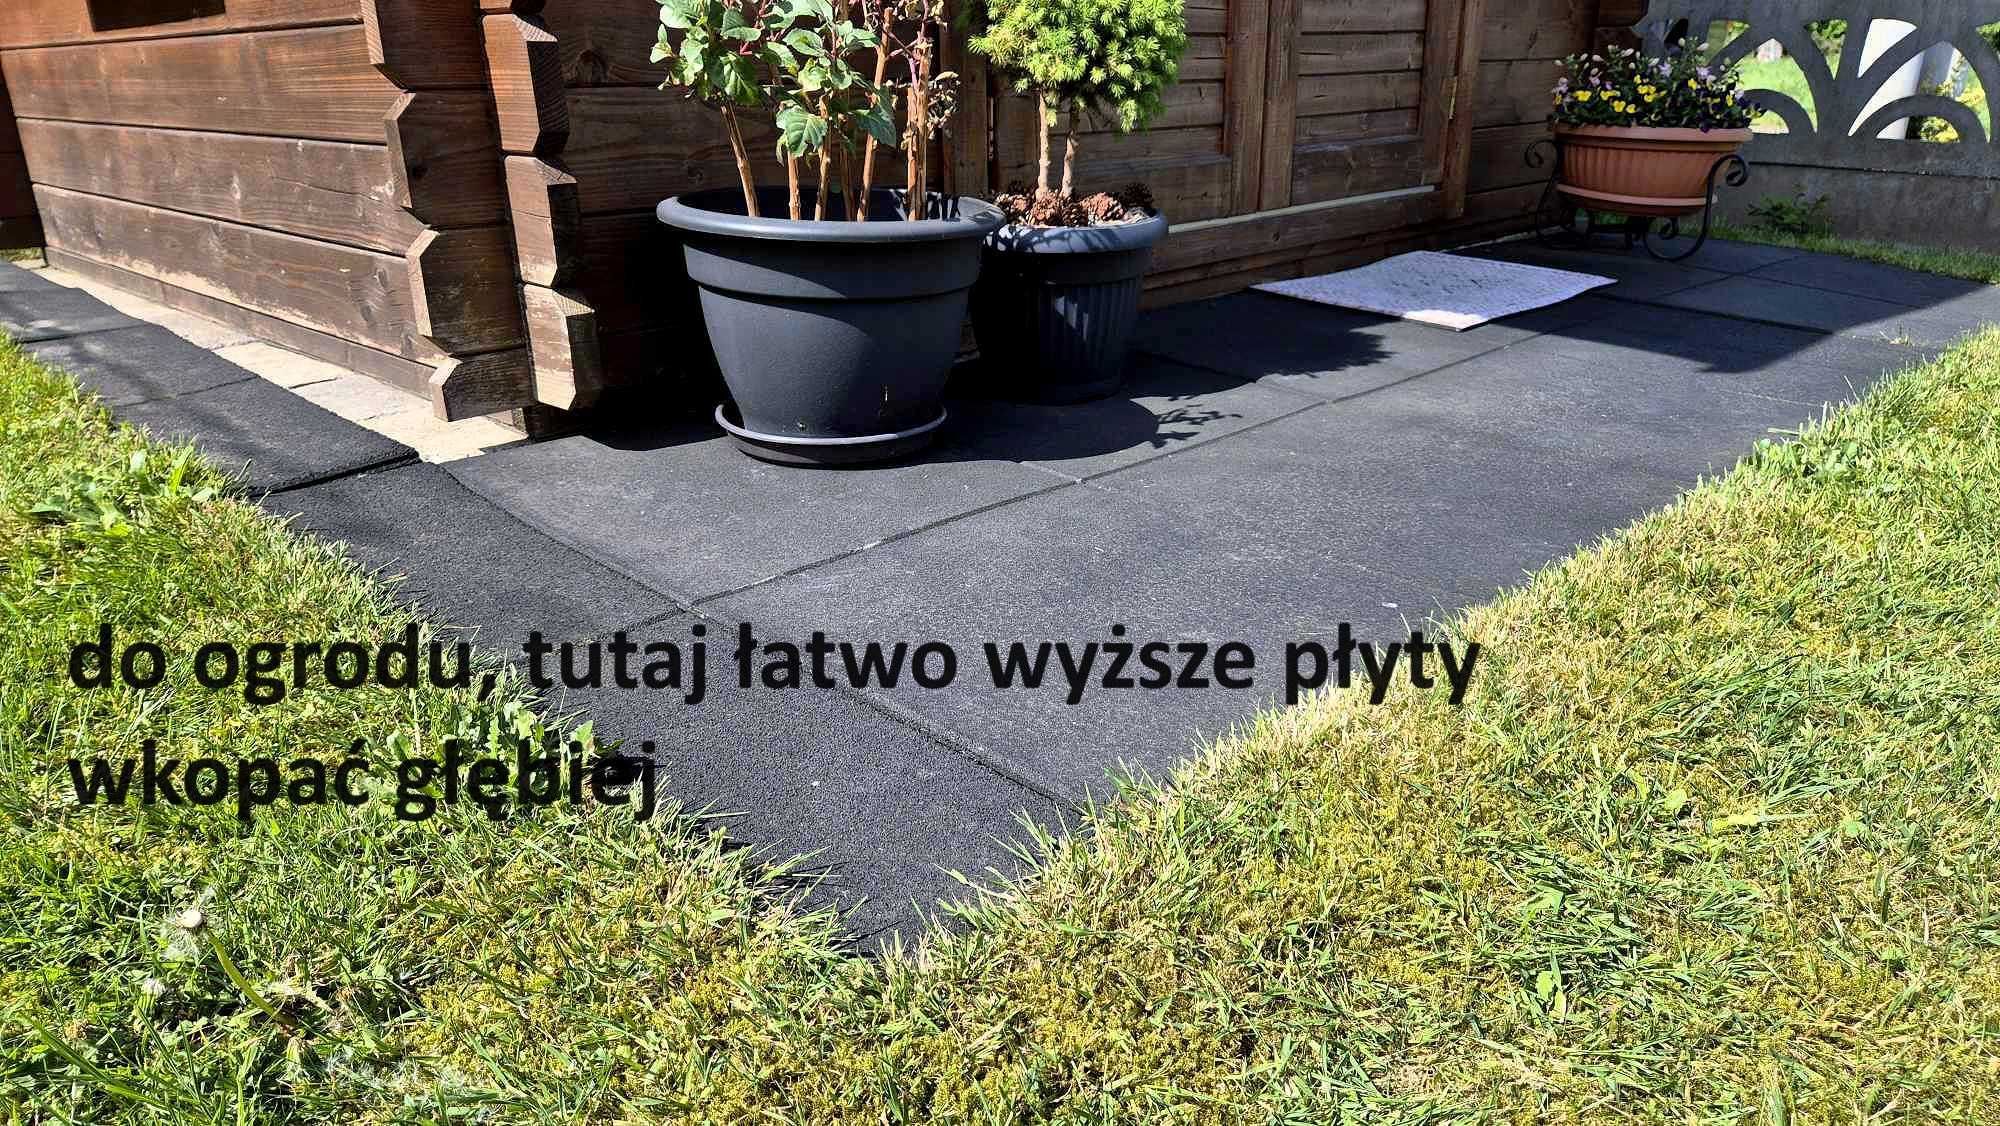 Puzzle Maty Płyty Warsztat Garaż Ogród Basen Siłownia Taras Balkon